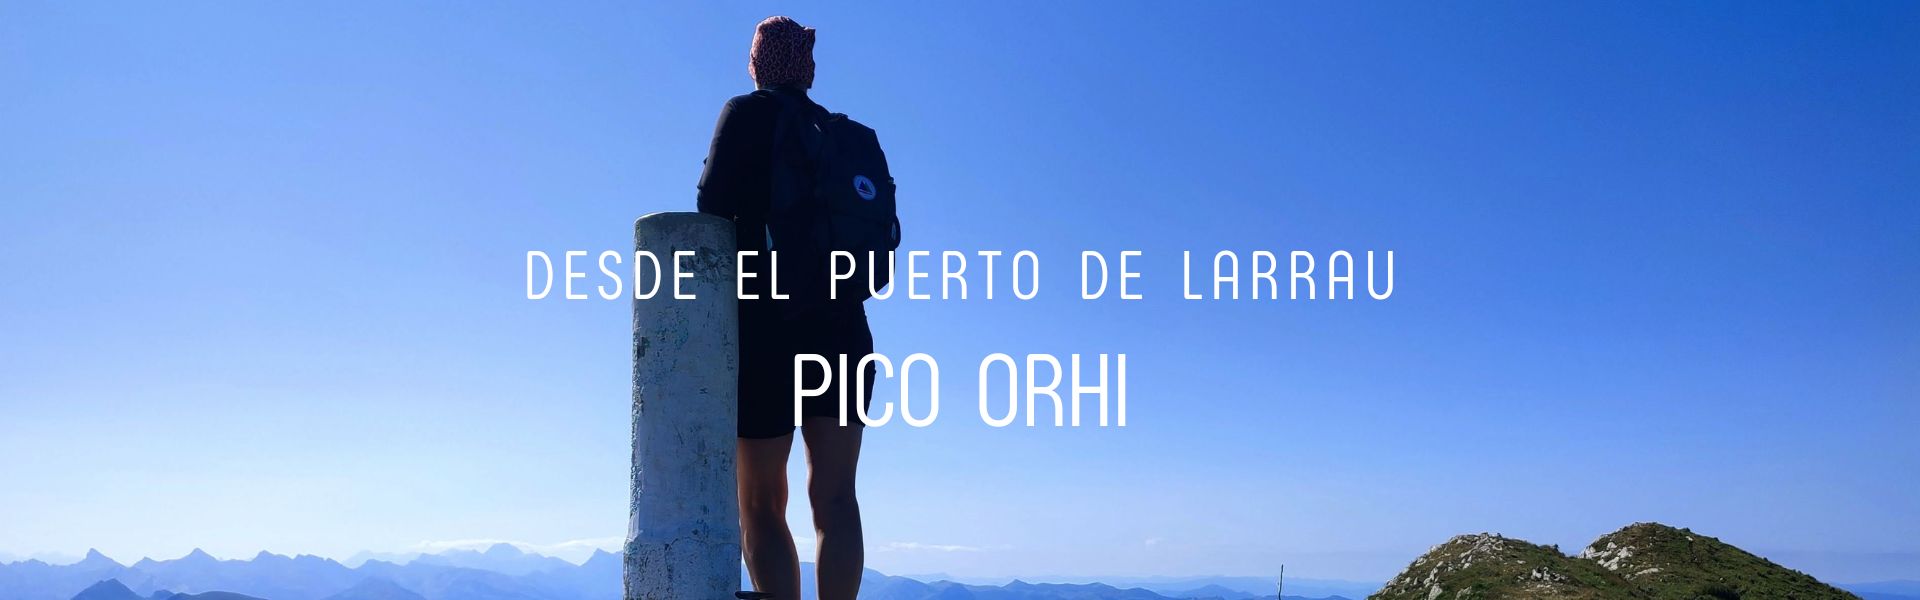 Pico Orhi